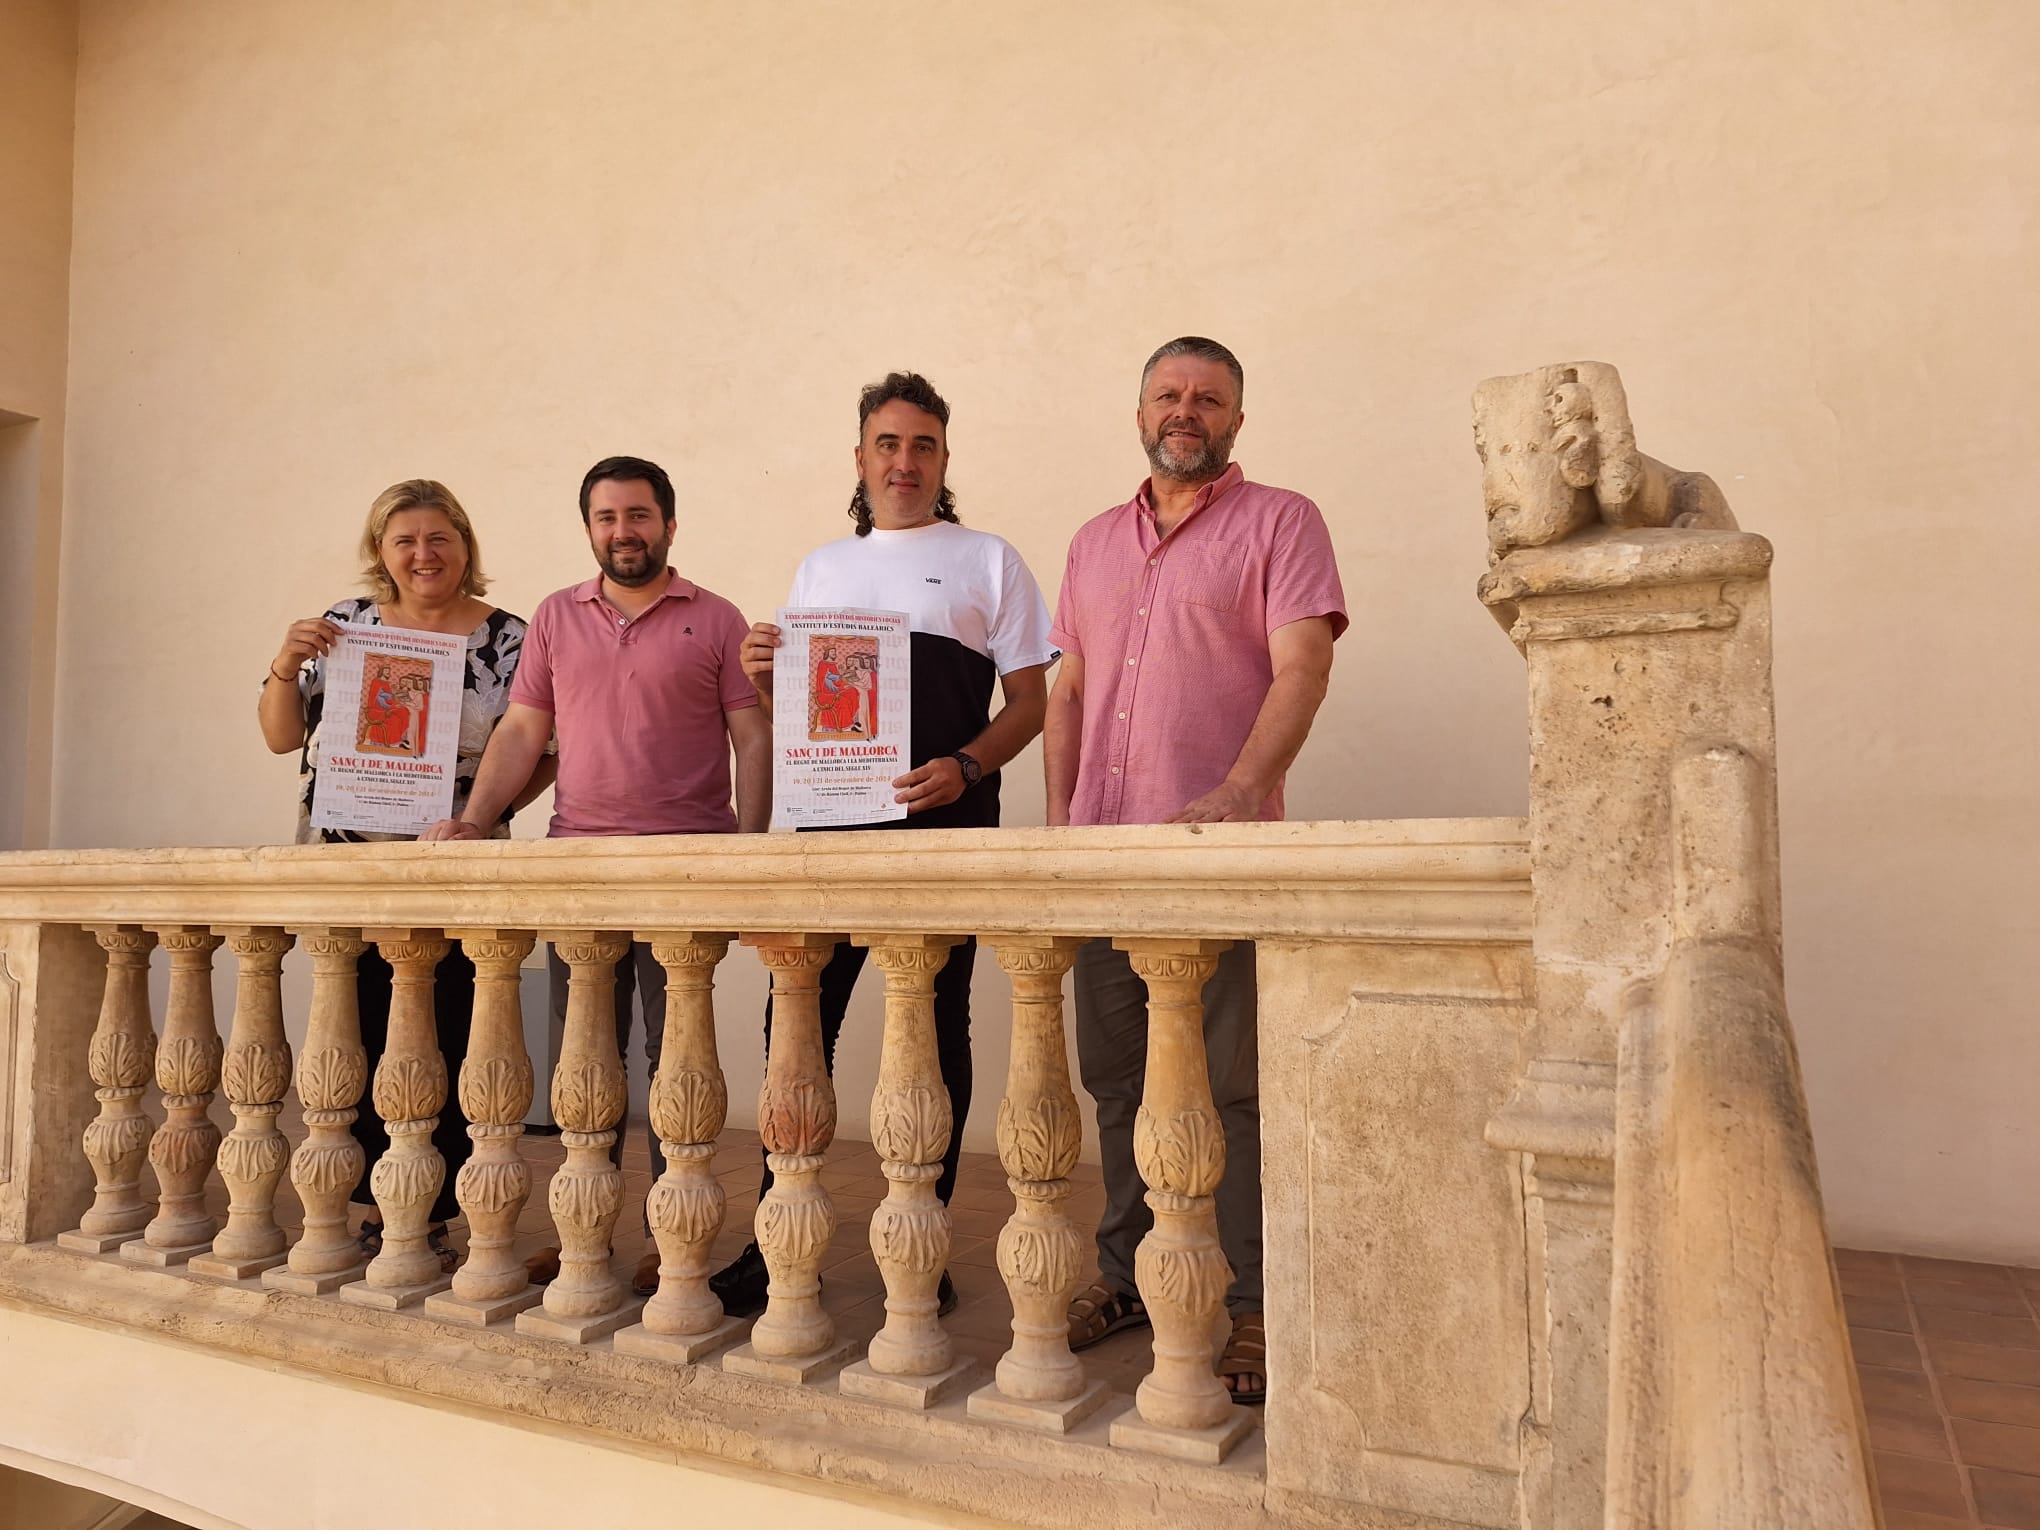 Oberta la inscripció a les Jornades d’Estudis Històrics Locals de l'IEB dedicades a Sanç I de Mallorca